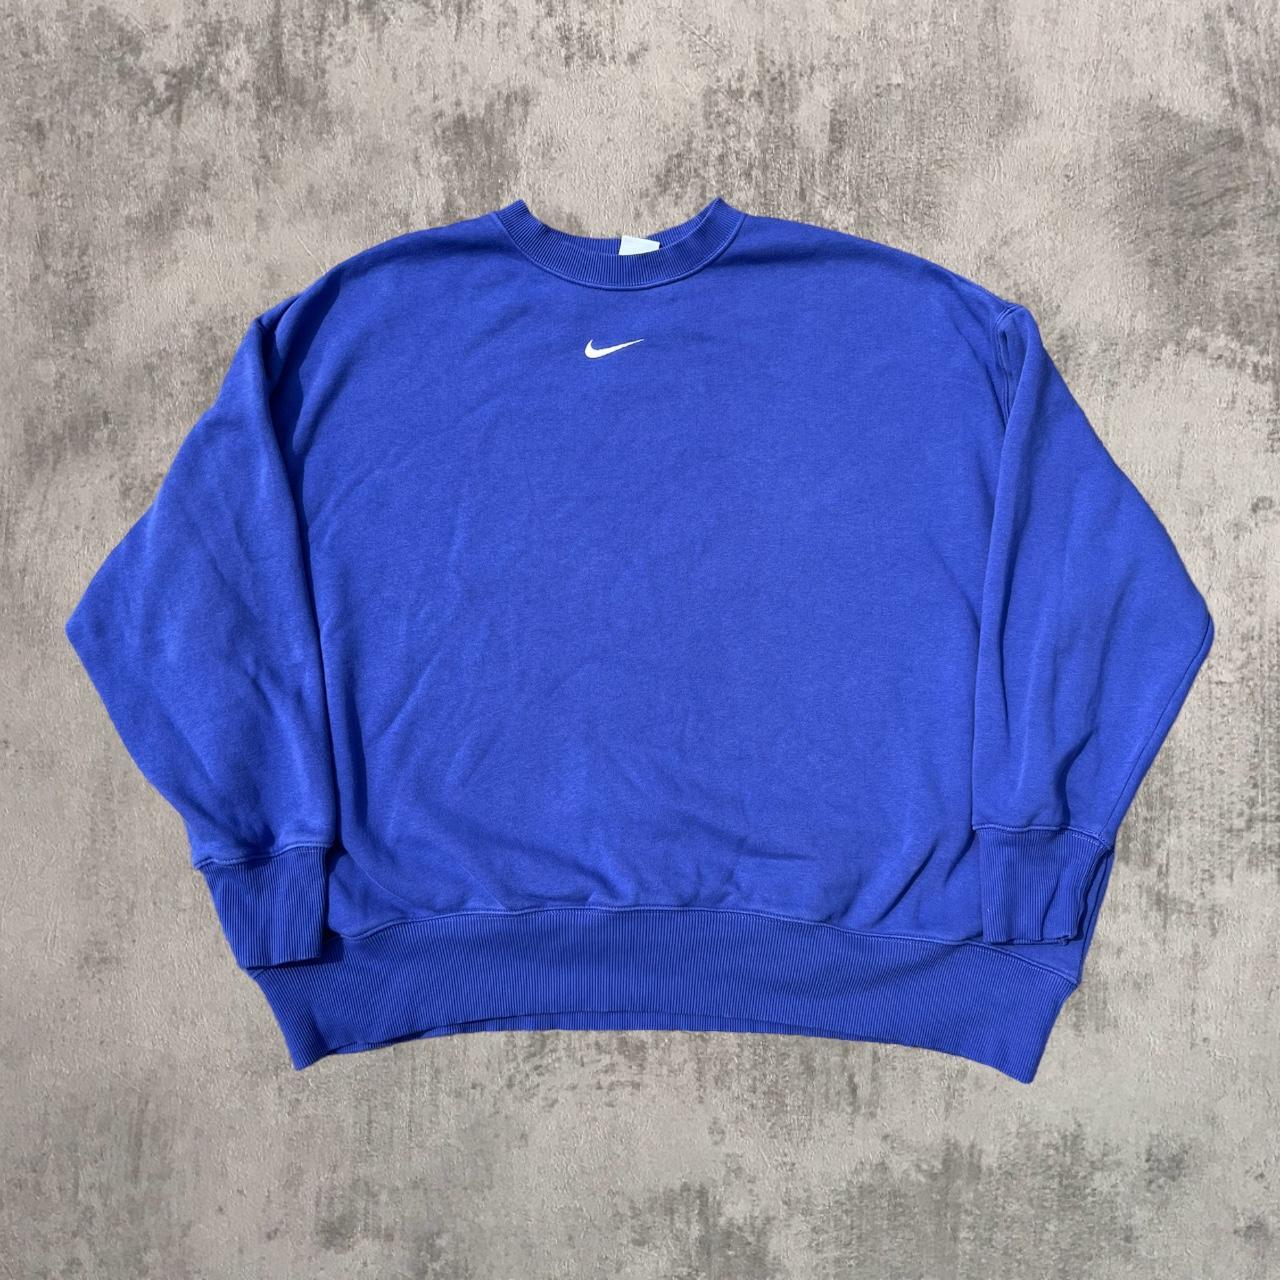 Nike Men's Purple Sweatshirt | Depop